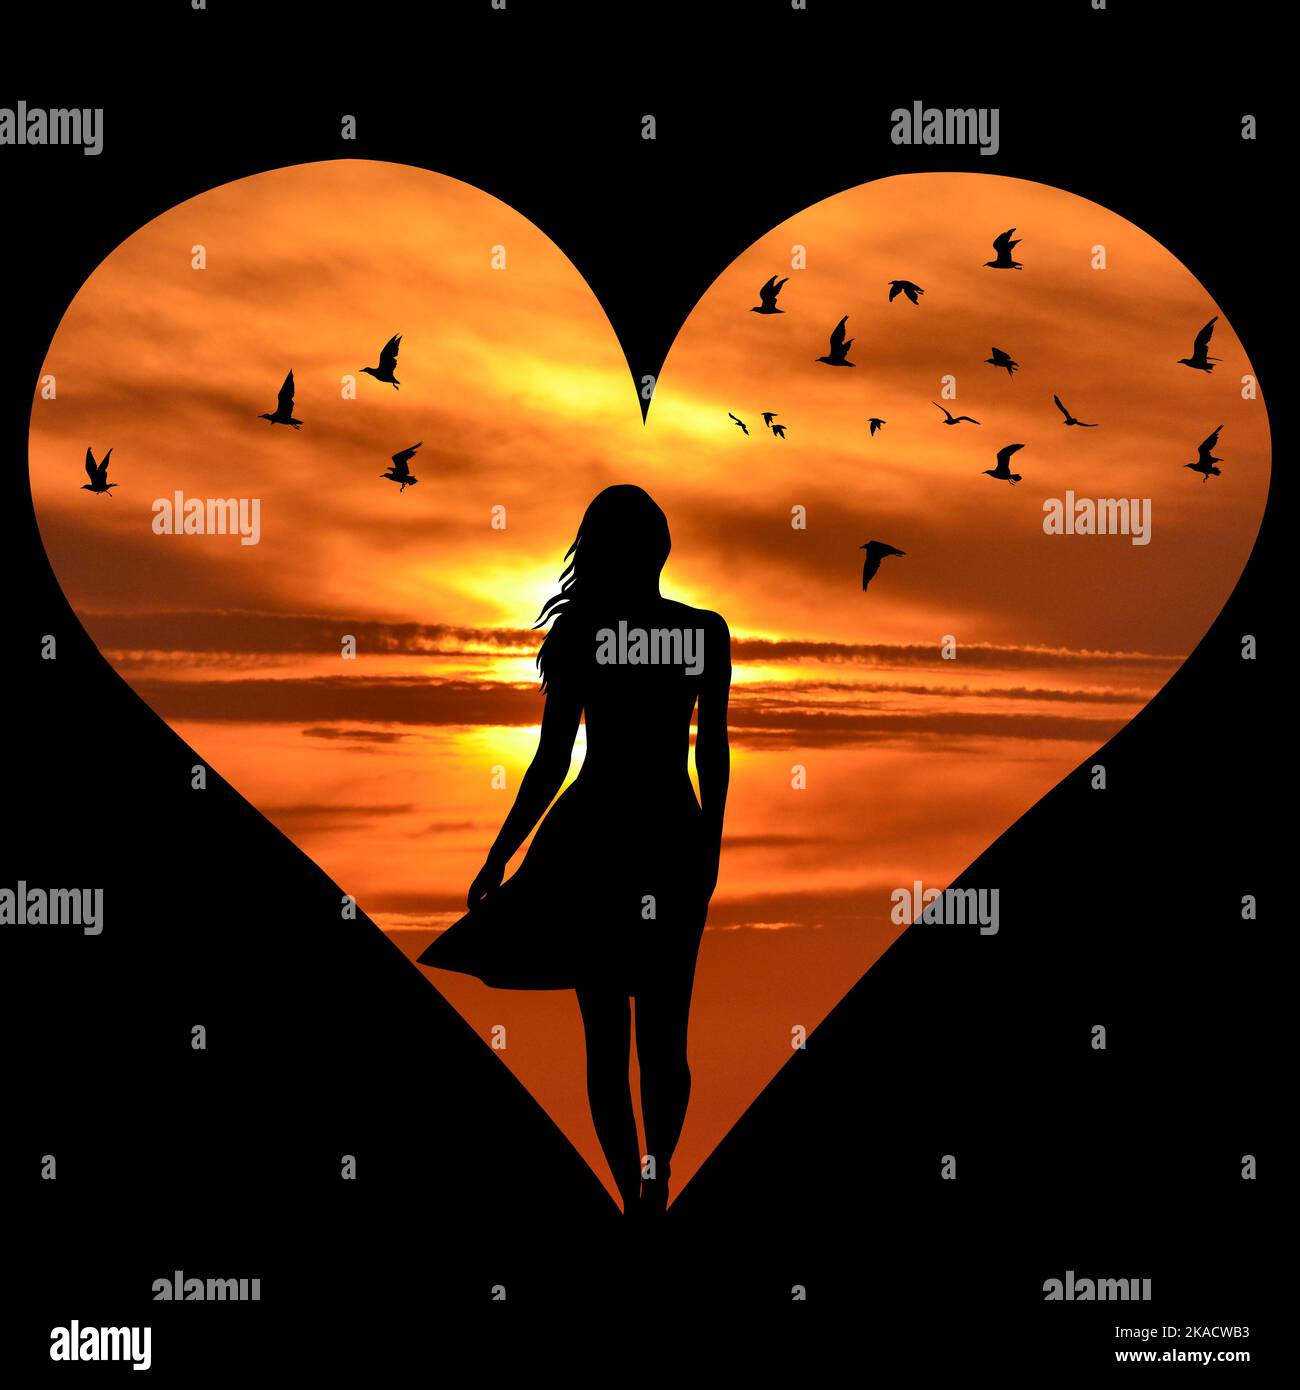 Forme de coeur avec silhouette de femme et oiseaux volants au-dessus du ciel de coucher de soleil Banque D'Images